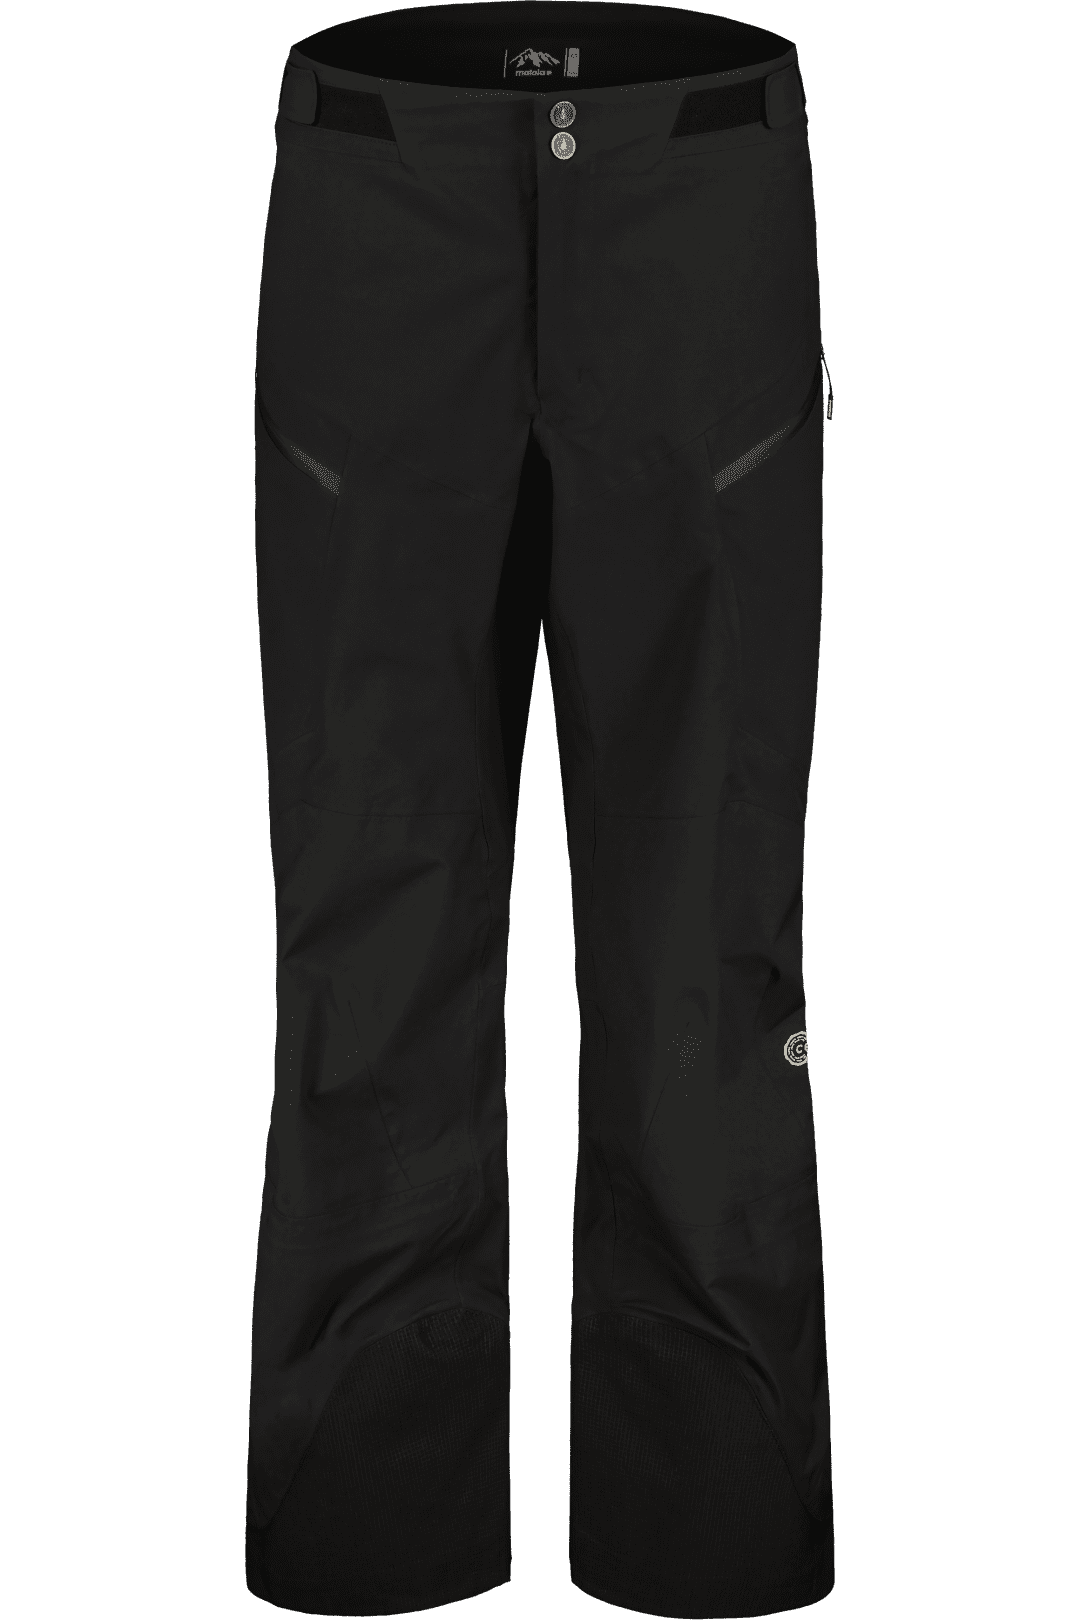 ORTOVOX 3L GUARDIAN SHELL PANTS M | Hardshell Pants